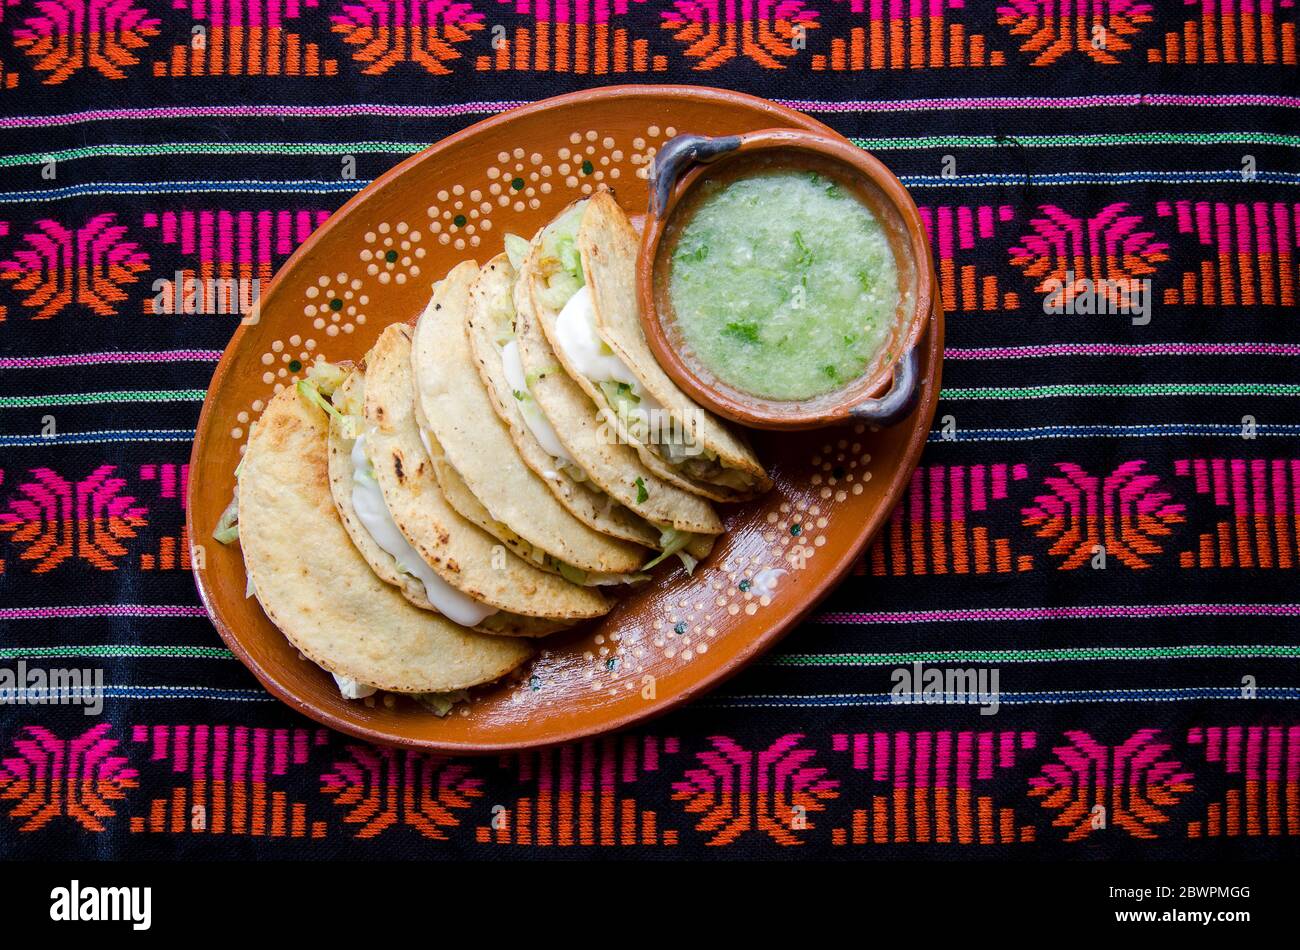 Authentic mexican tacos 'dorados' Stock Photo